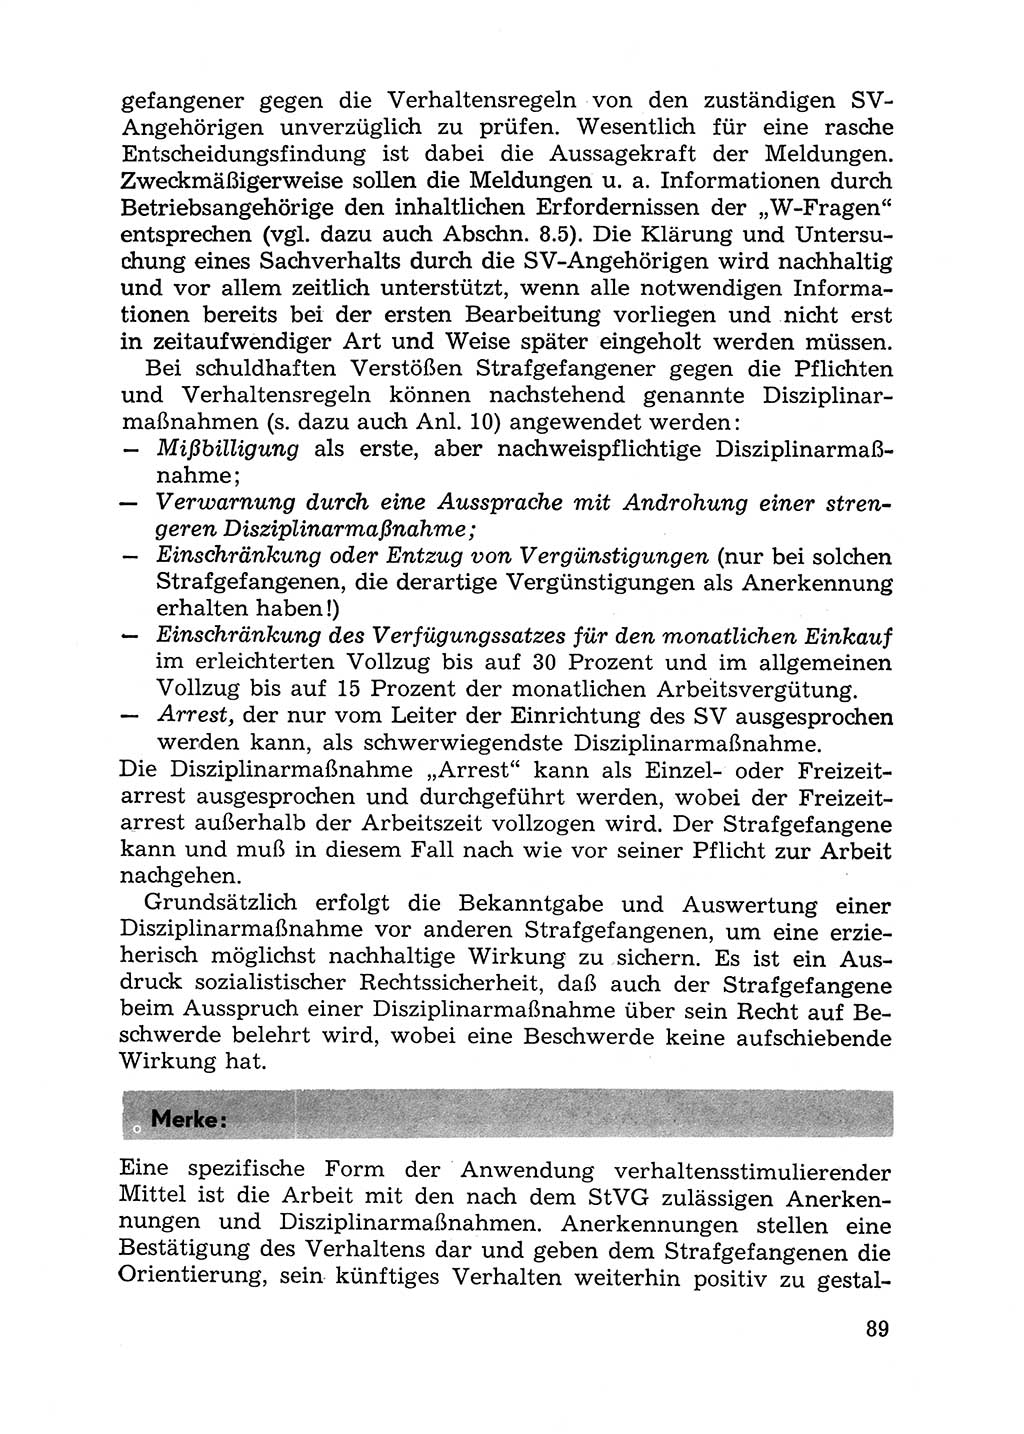 Handbuch für Betriebsangehörige, Abteilung Strafvollzug (SV) [Ministerium des Innern (MdI) Deutsche Demokratische Republik (DDR)] 1981, Seite 89 (Hb. BA Abt. SV MdI DDR 1981, S. 89)